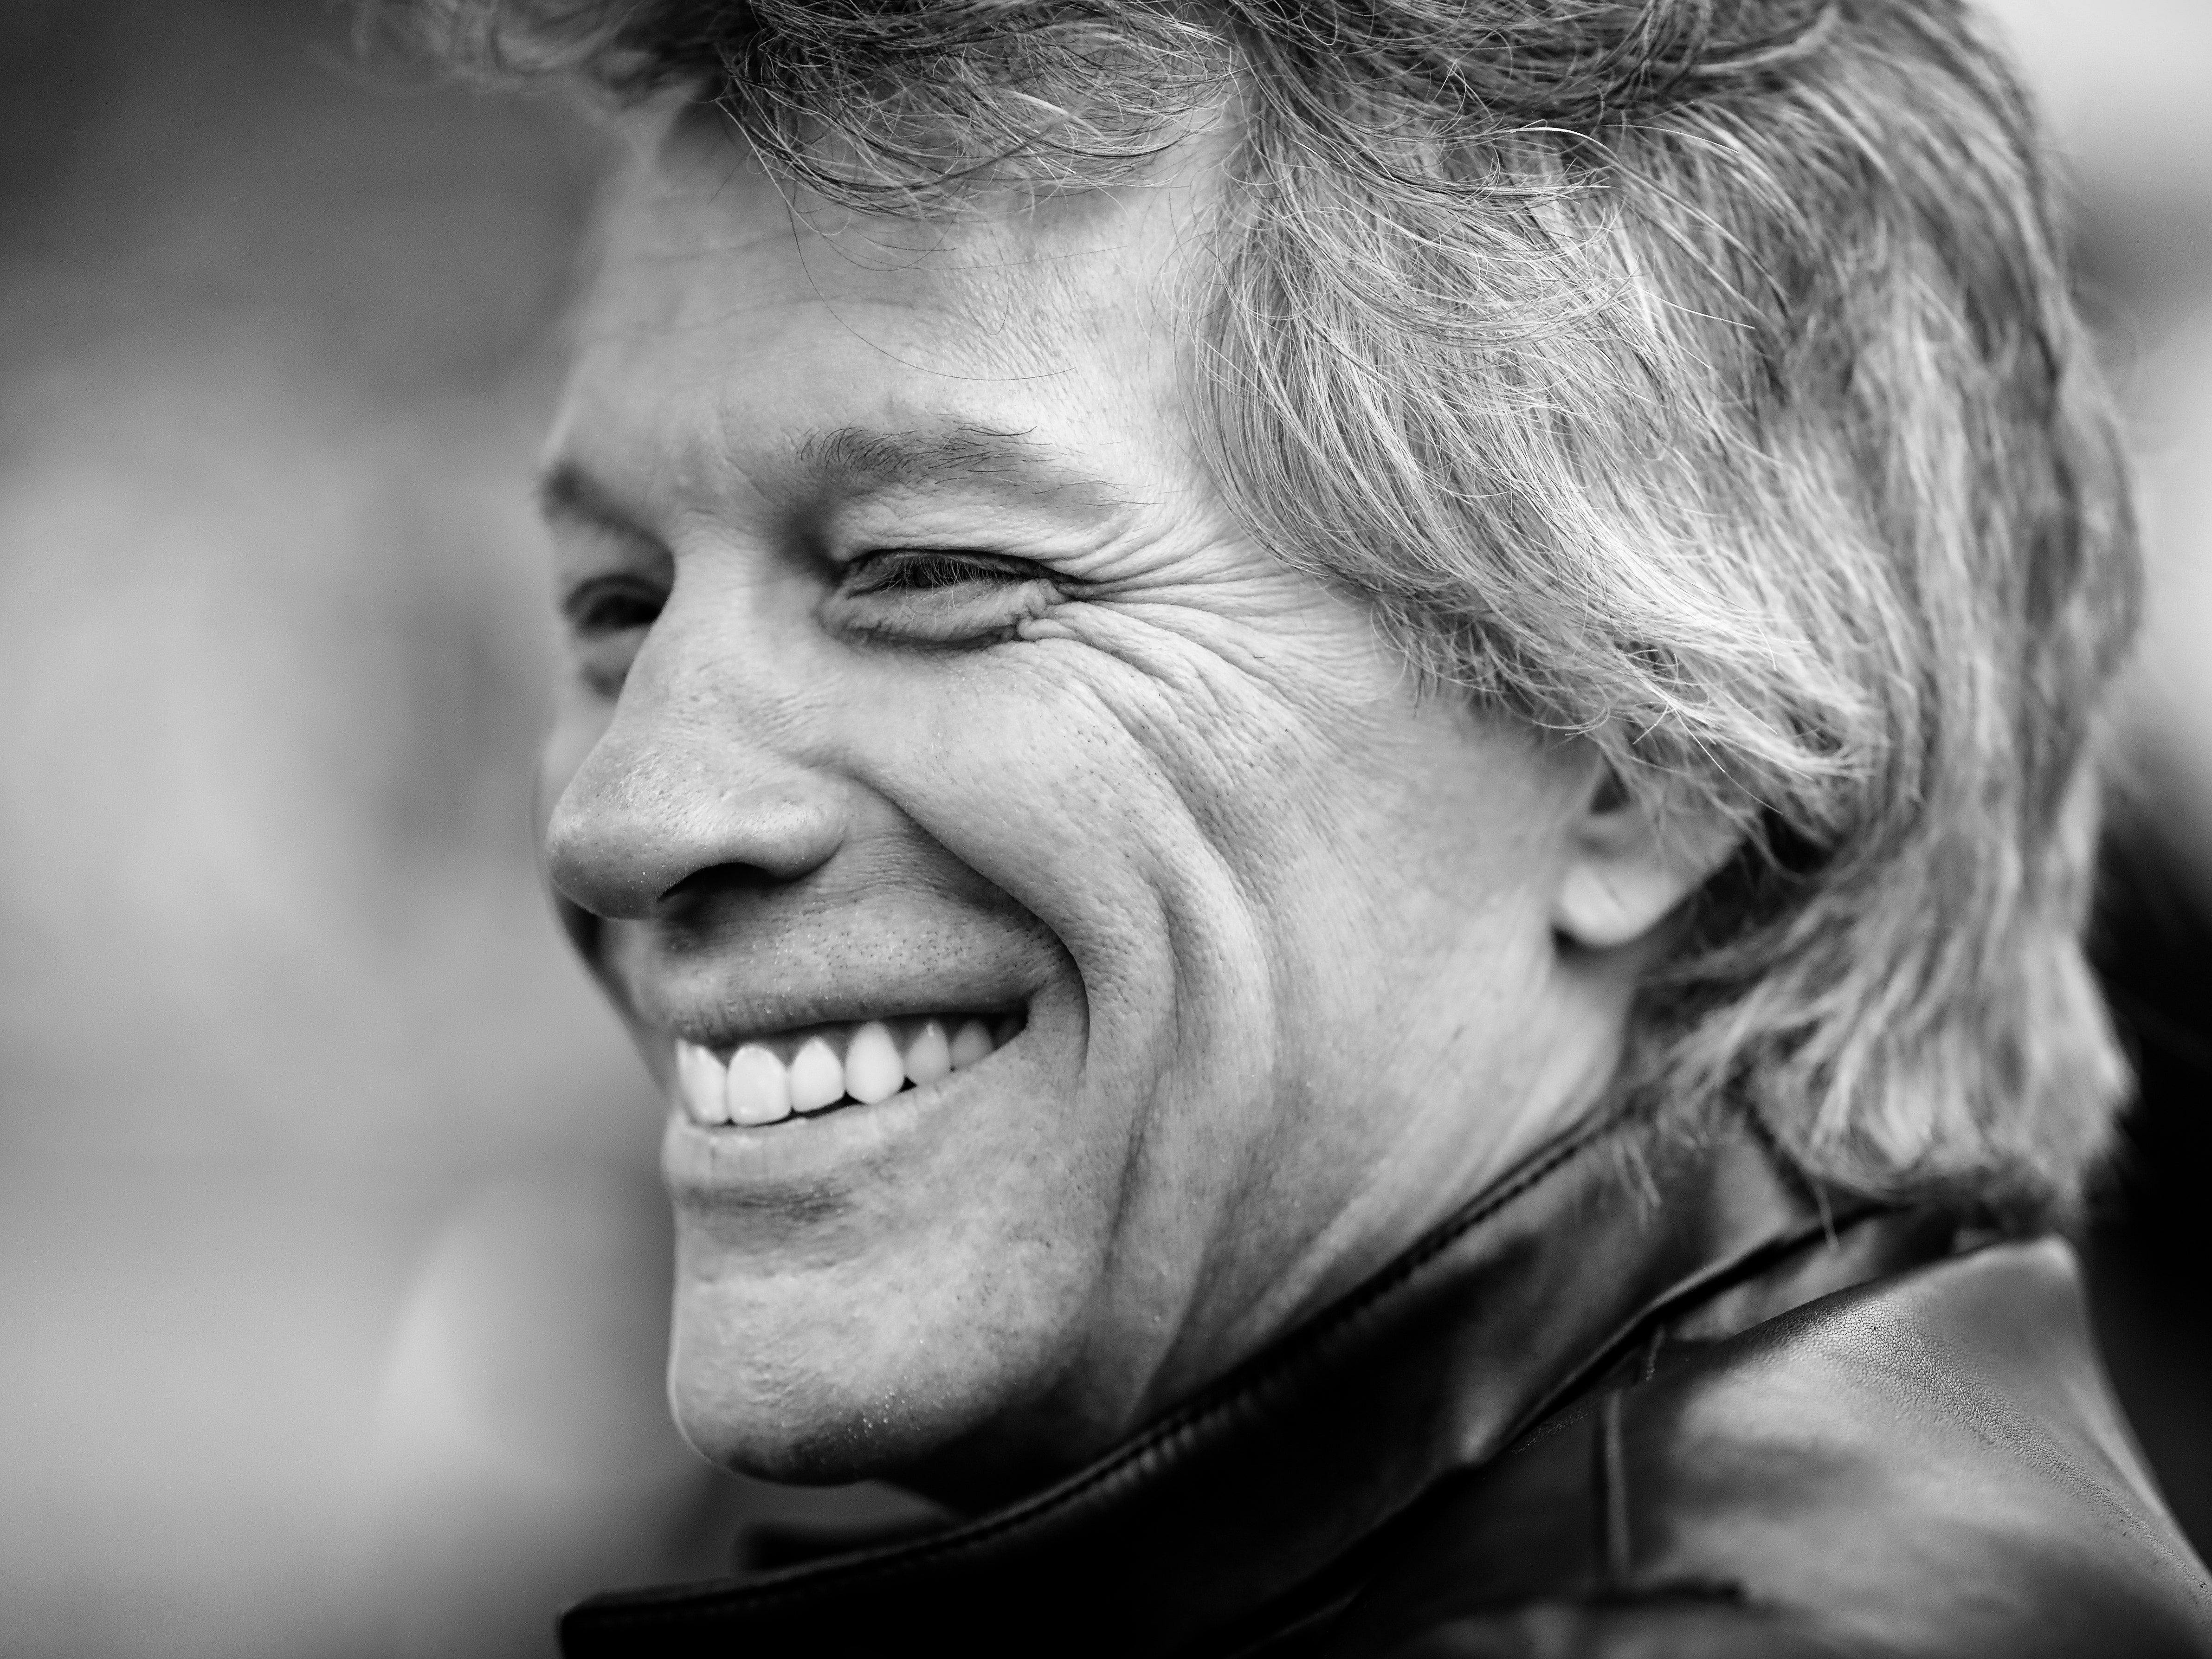 Muere el famoso cantante Jon Bon Jovi a los 60 años